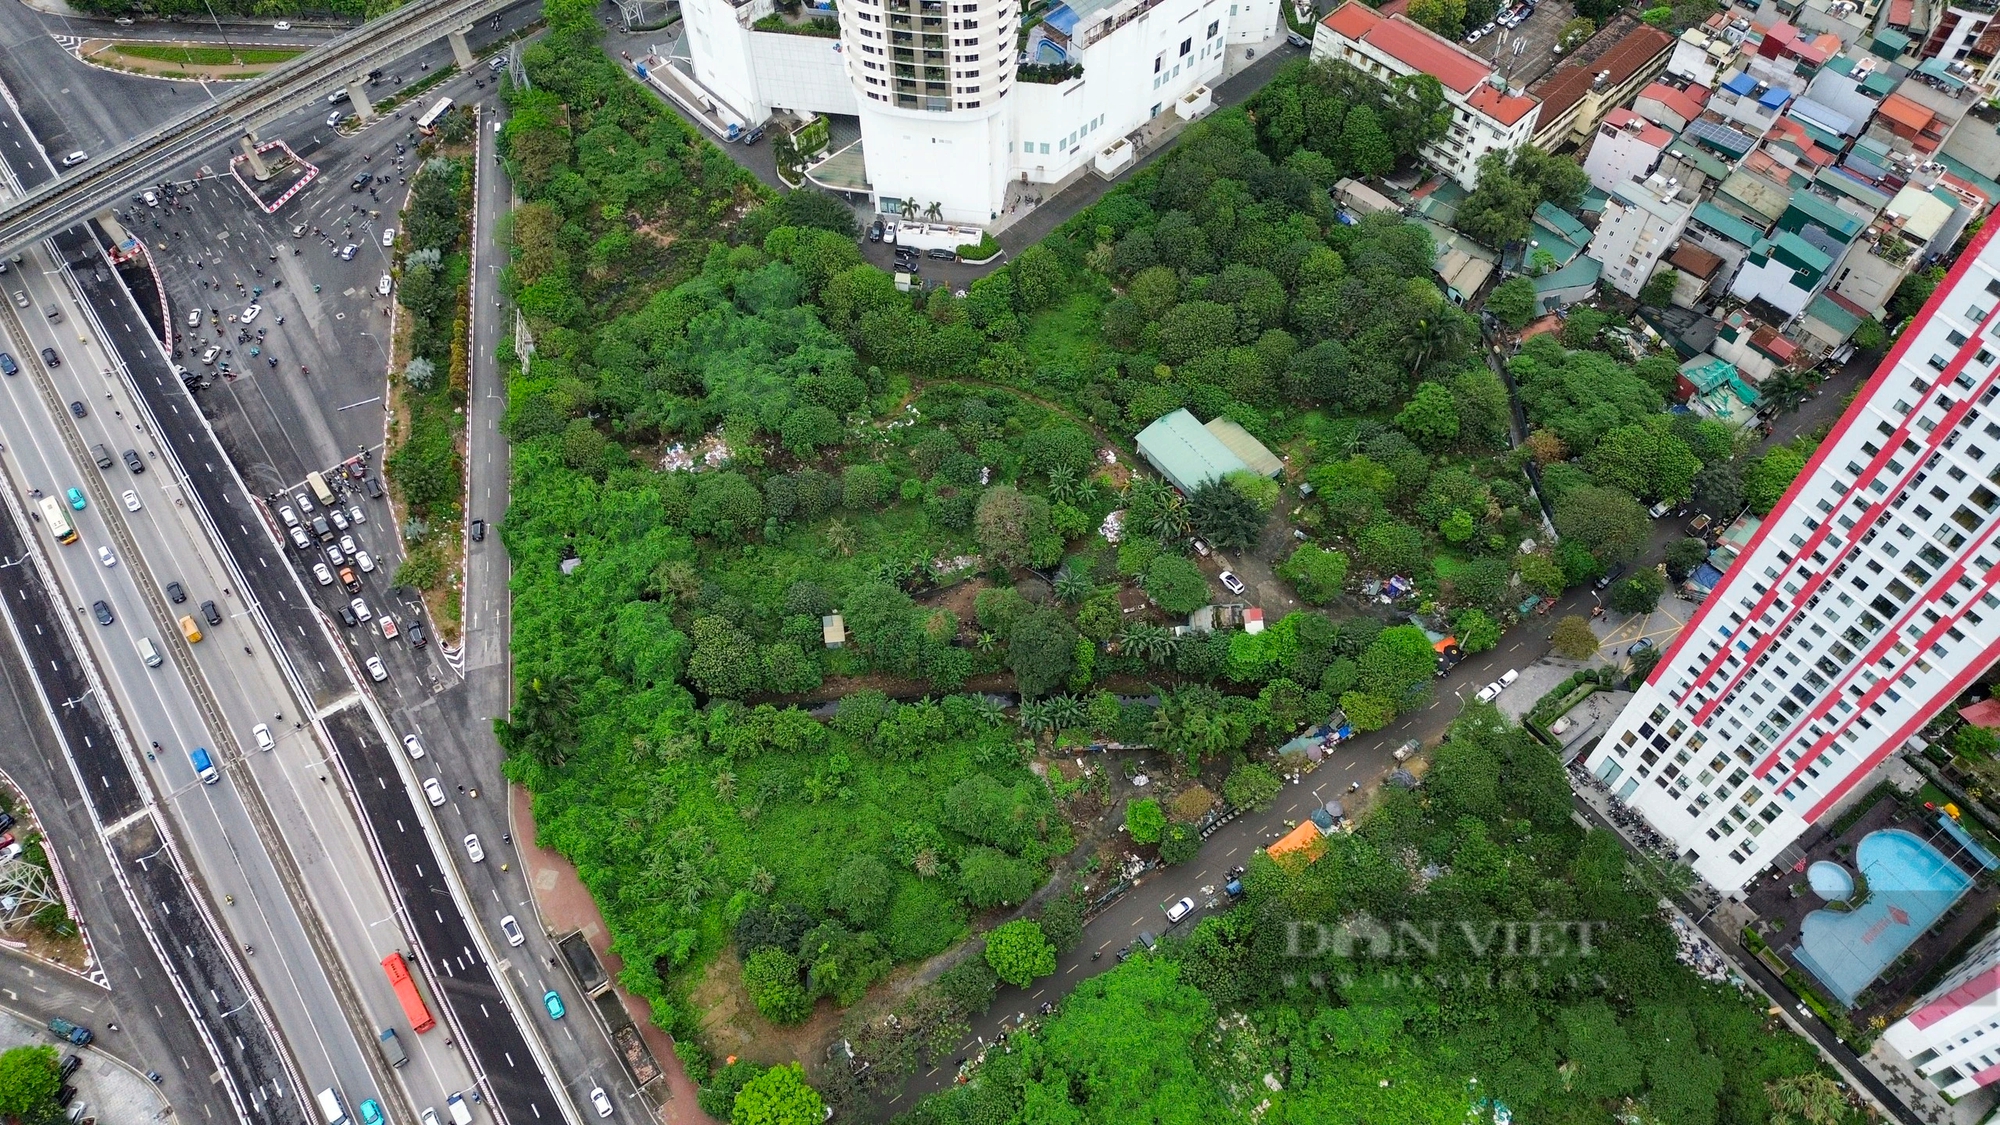 Dự án chung cư cao cấp 45 tầng vị trí đắc địa ở Hà Nội sau hàng thập kỷ vẫn quây tôn bỏ hoang- Ảnh 3.